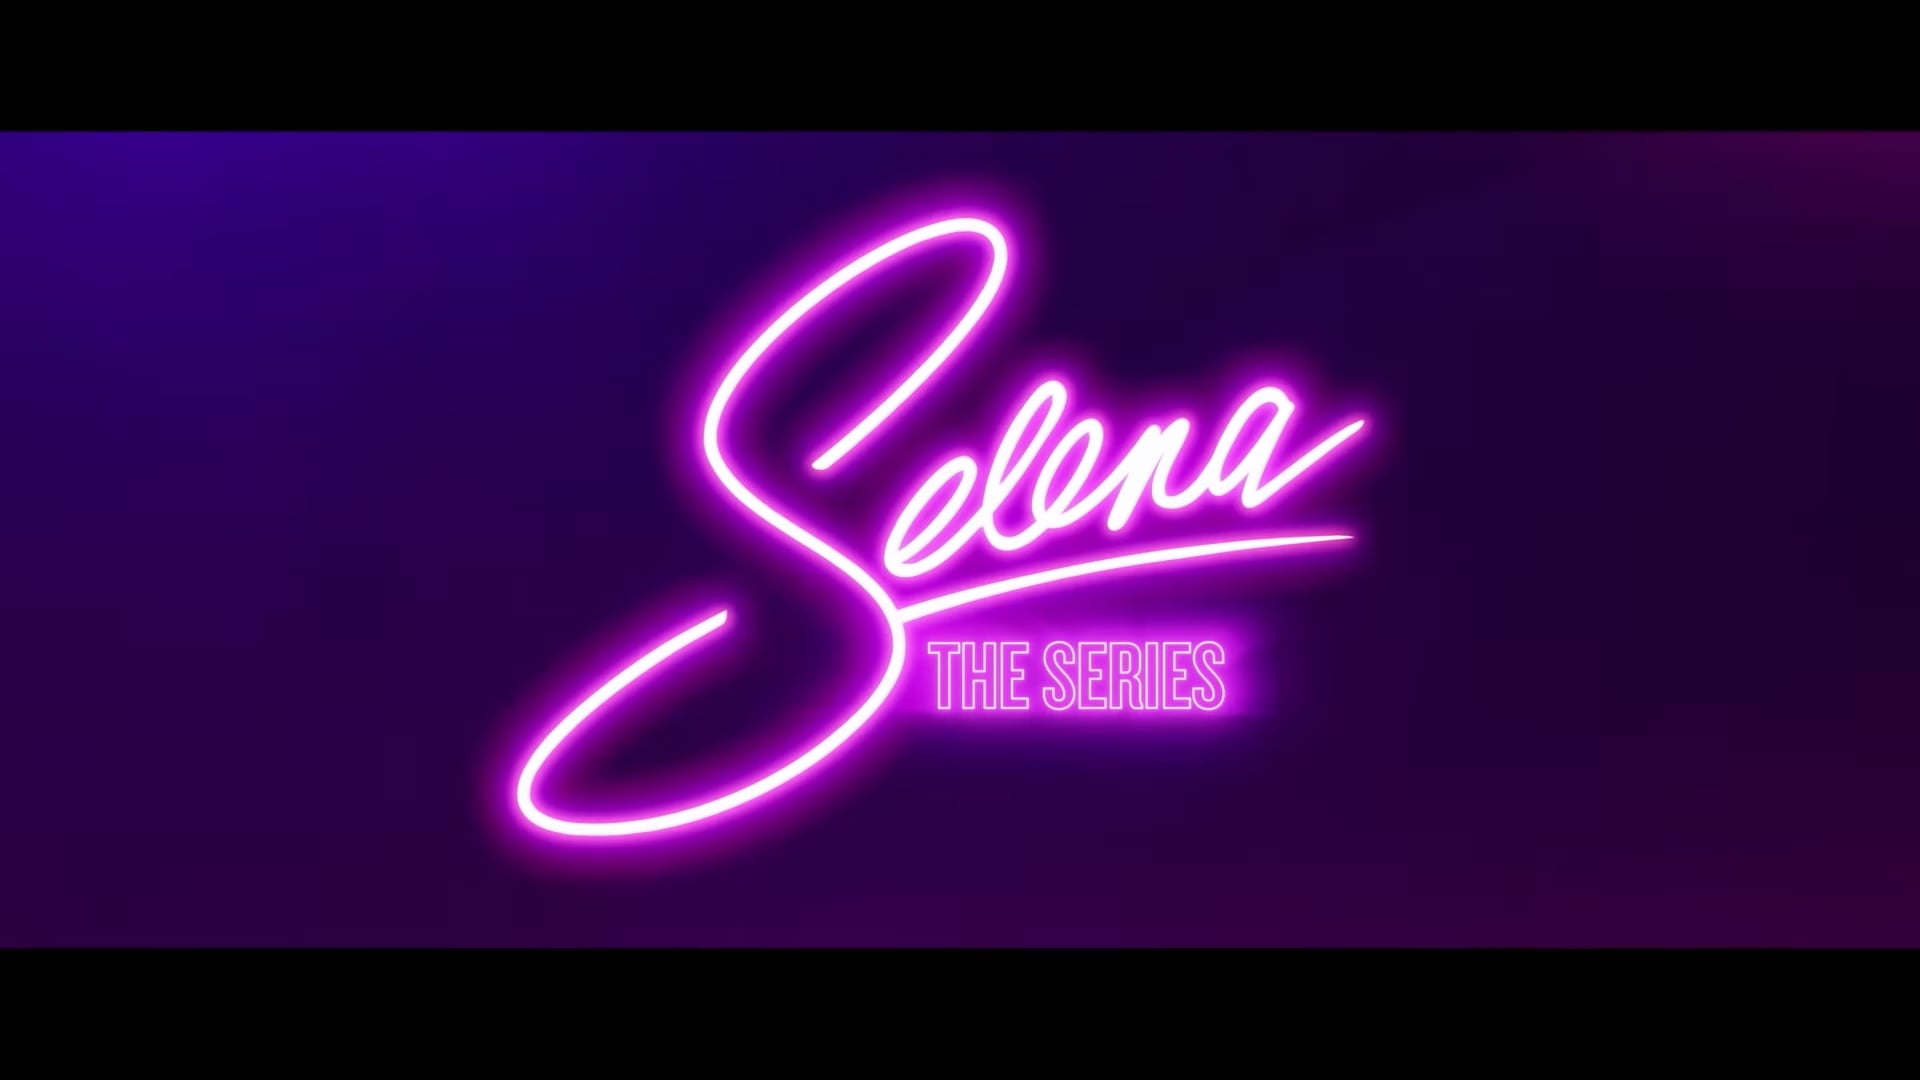 Netflix Selena The Series Trailer, Netflix Music Series, Netflix Biography, Coming to Netflix in December 2020